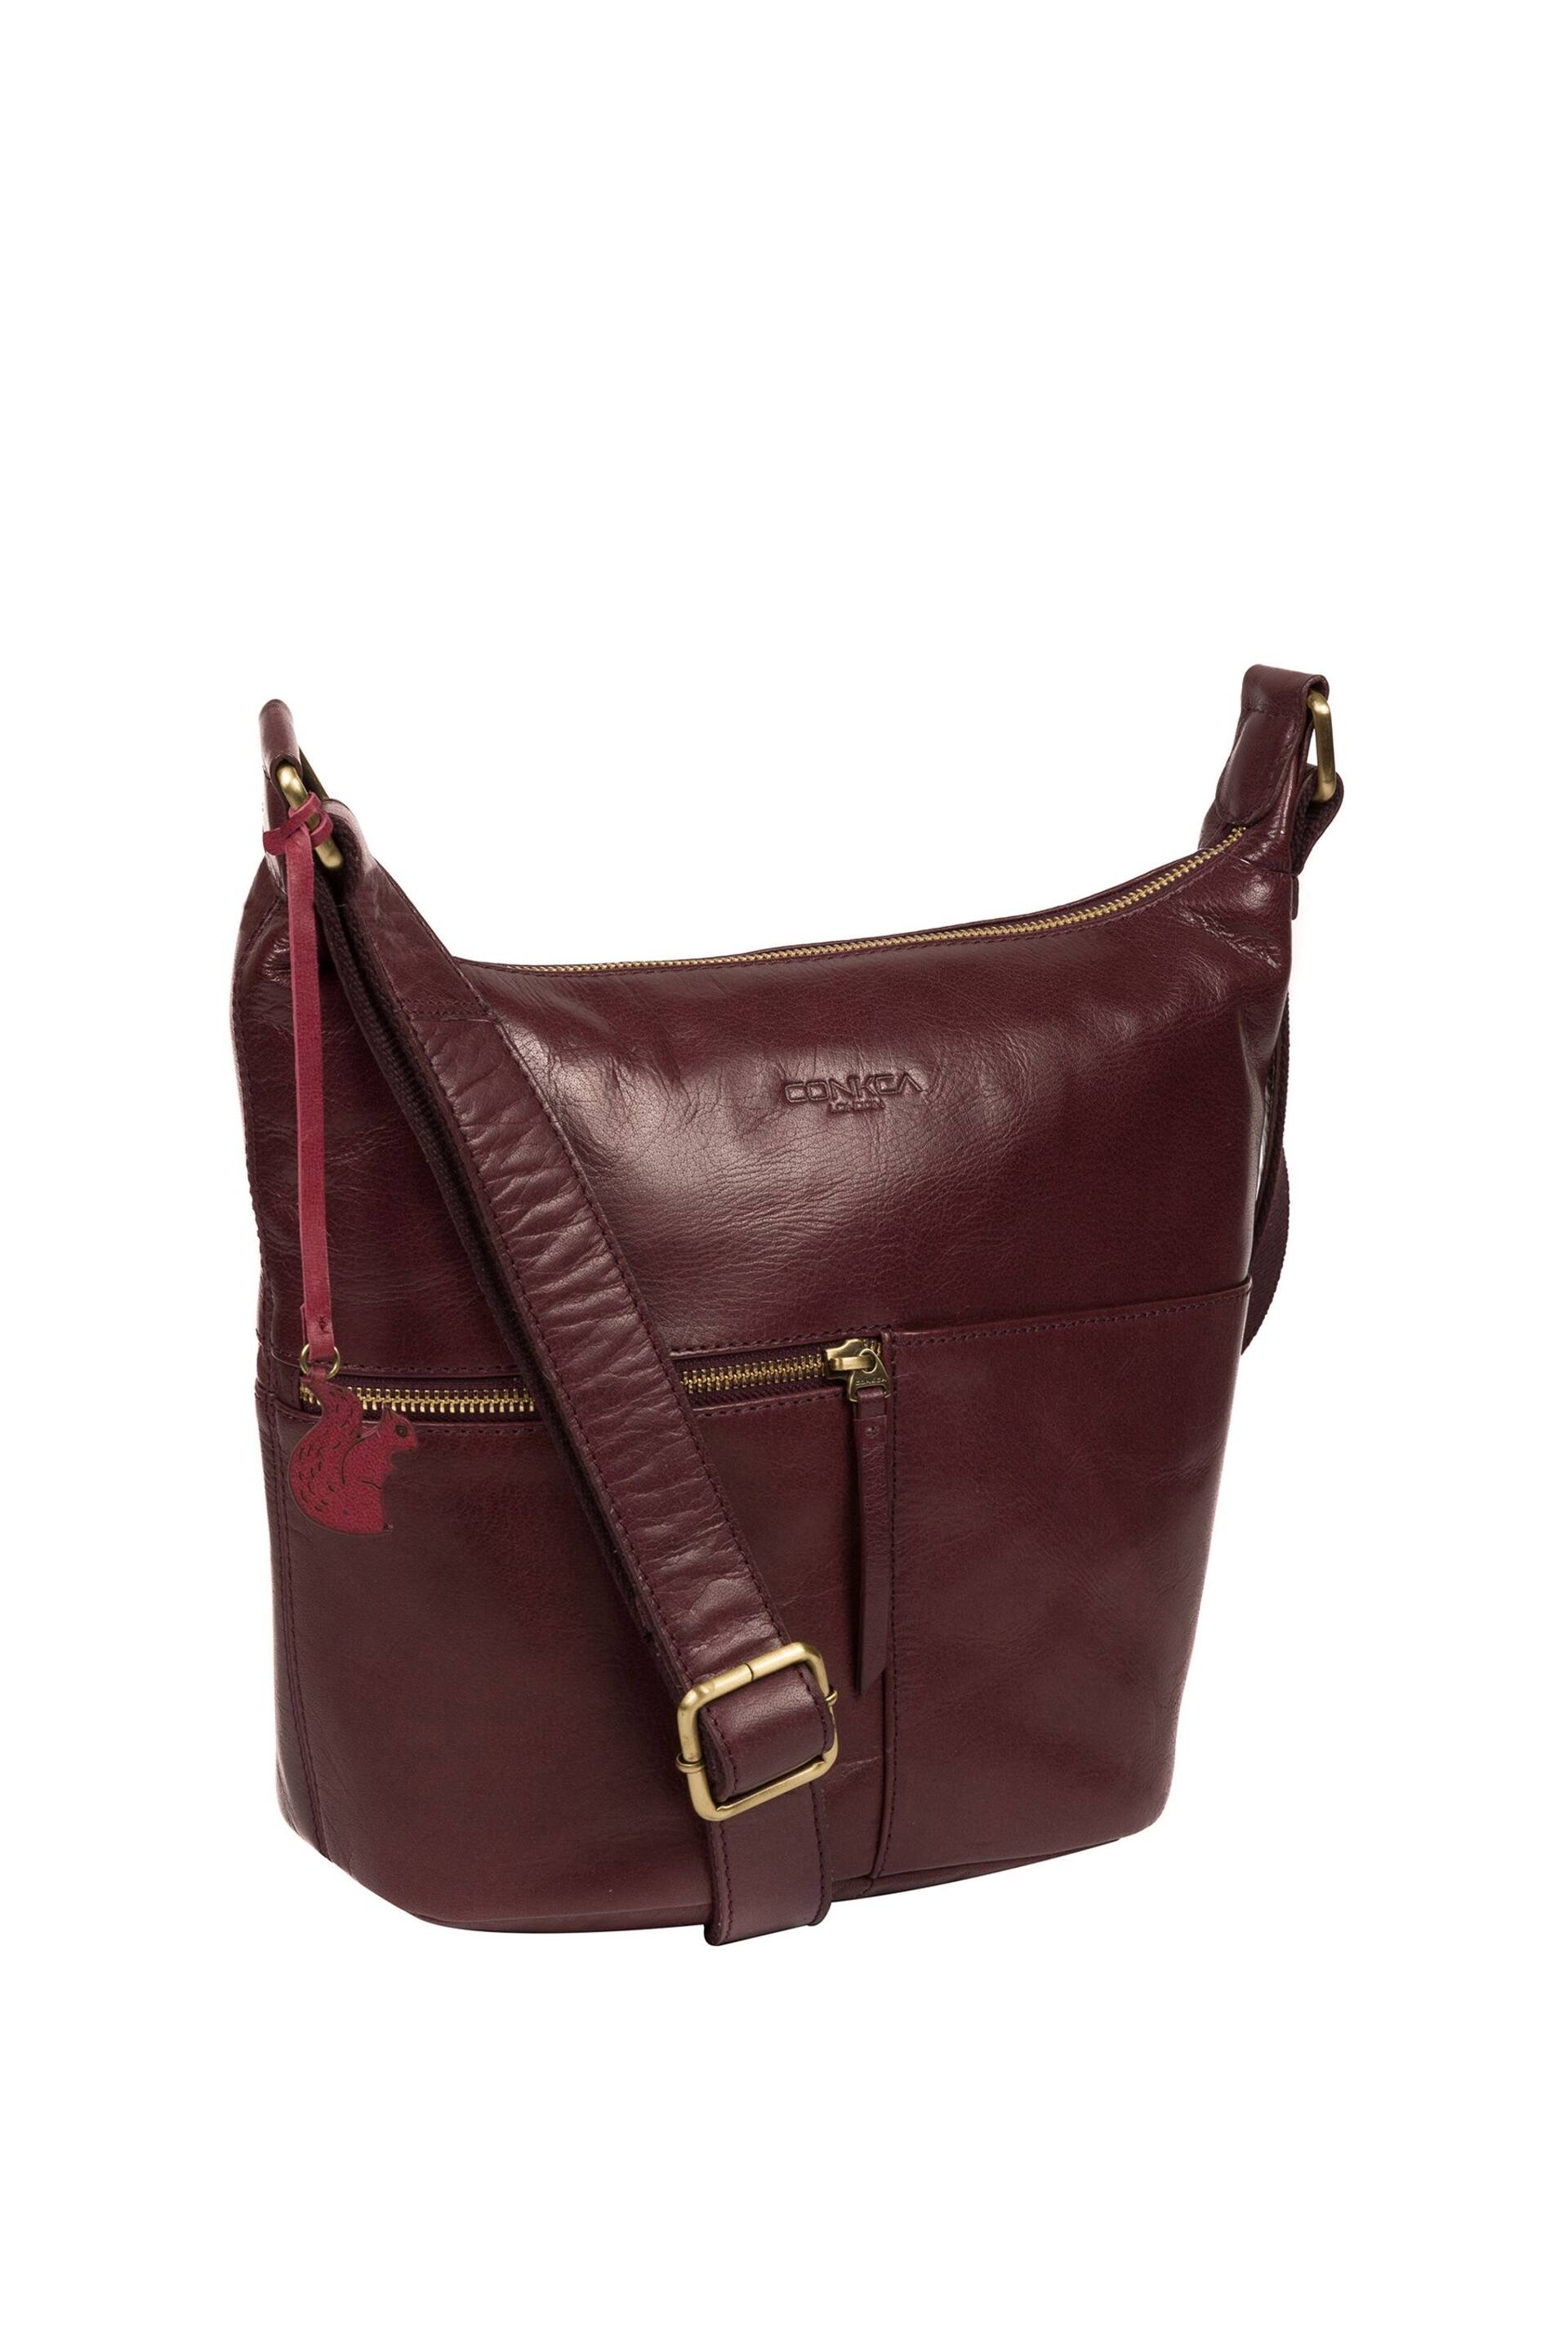 Conkca Kristin Leather Shoulder Bag - Image 3 of 5